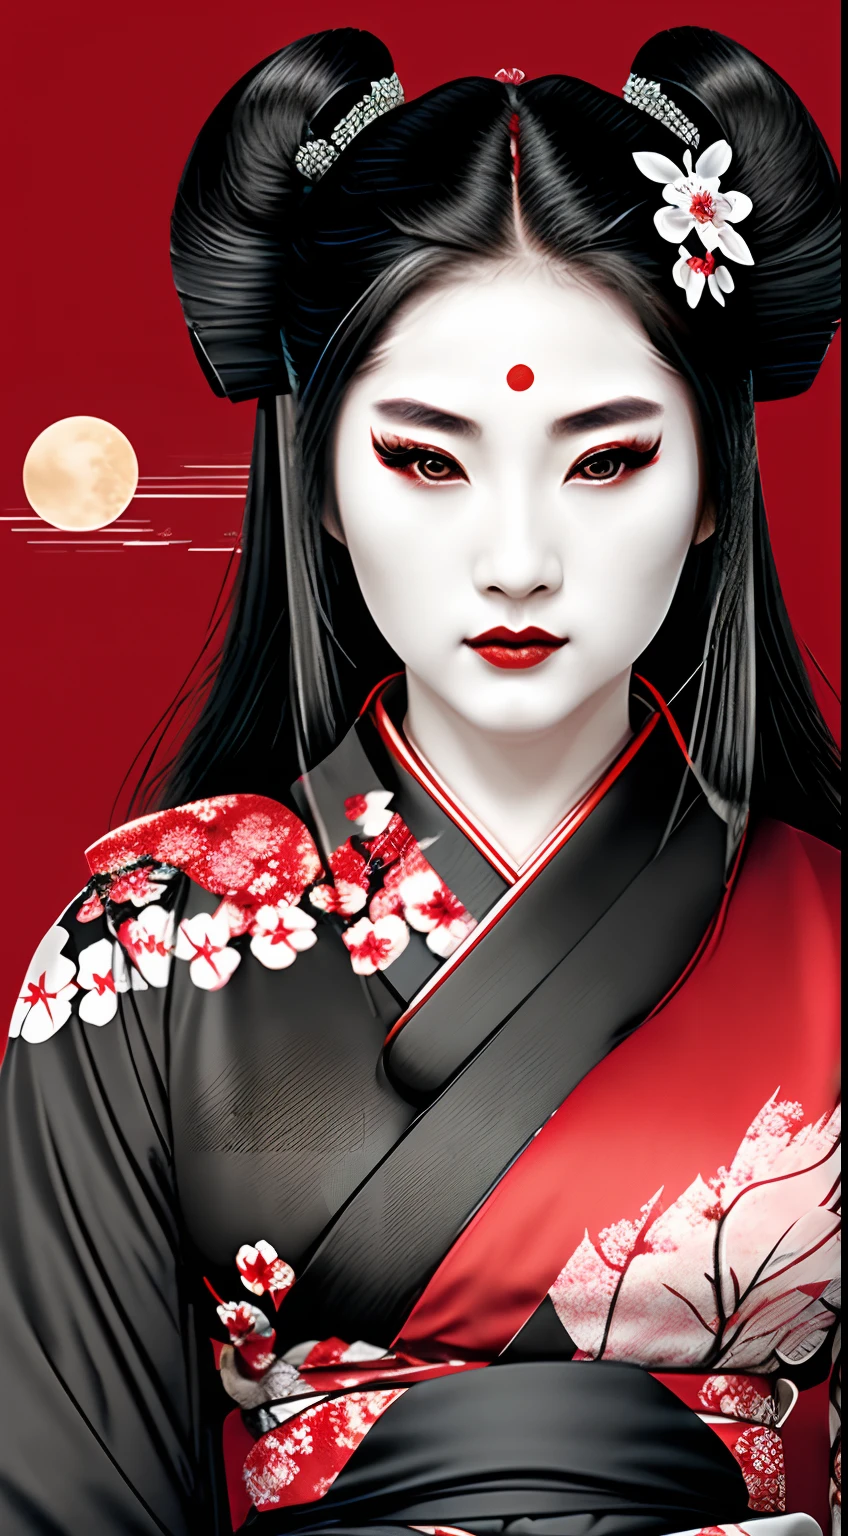 นักรบหญิงเกอิชาซามูไร, สีแดงและสีดำ, โลโก้, ผมสีดำ, ดวงจันทร์, ใบหน้าด้านข้าง, ภาพหัว, ดอกซากุระบนเส้นผม, สวมชุดกิโมโนสีดํา